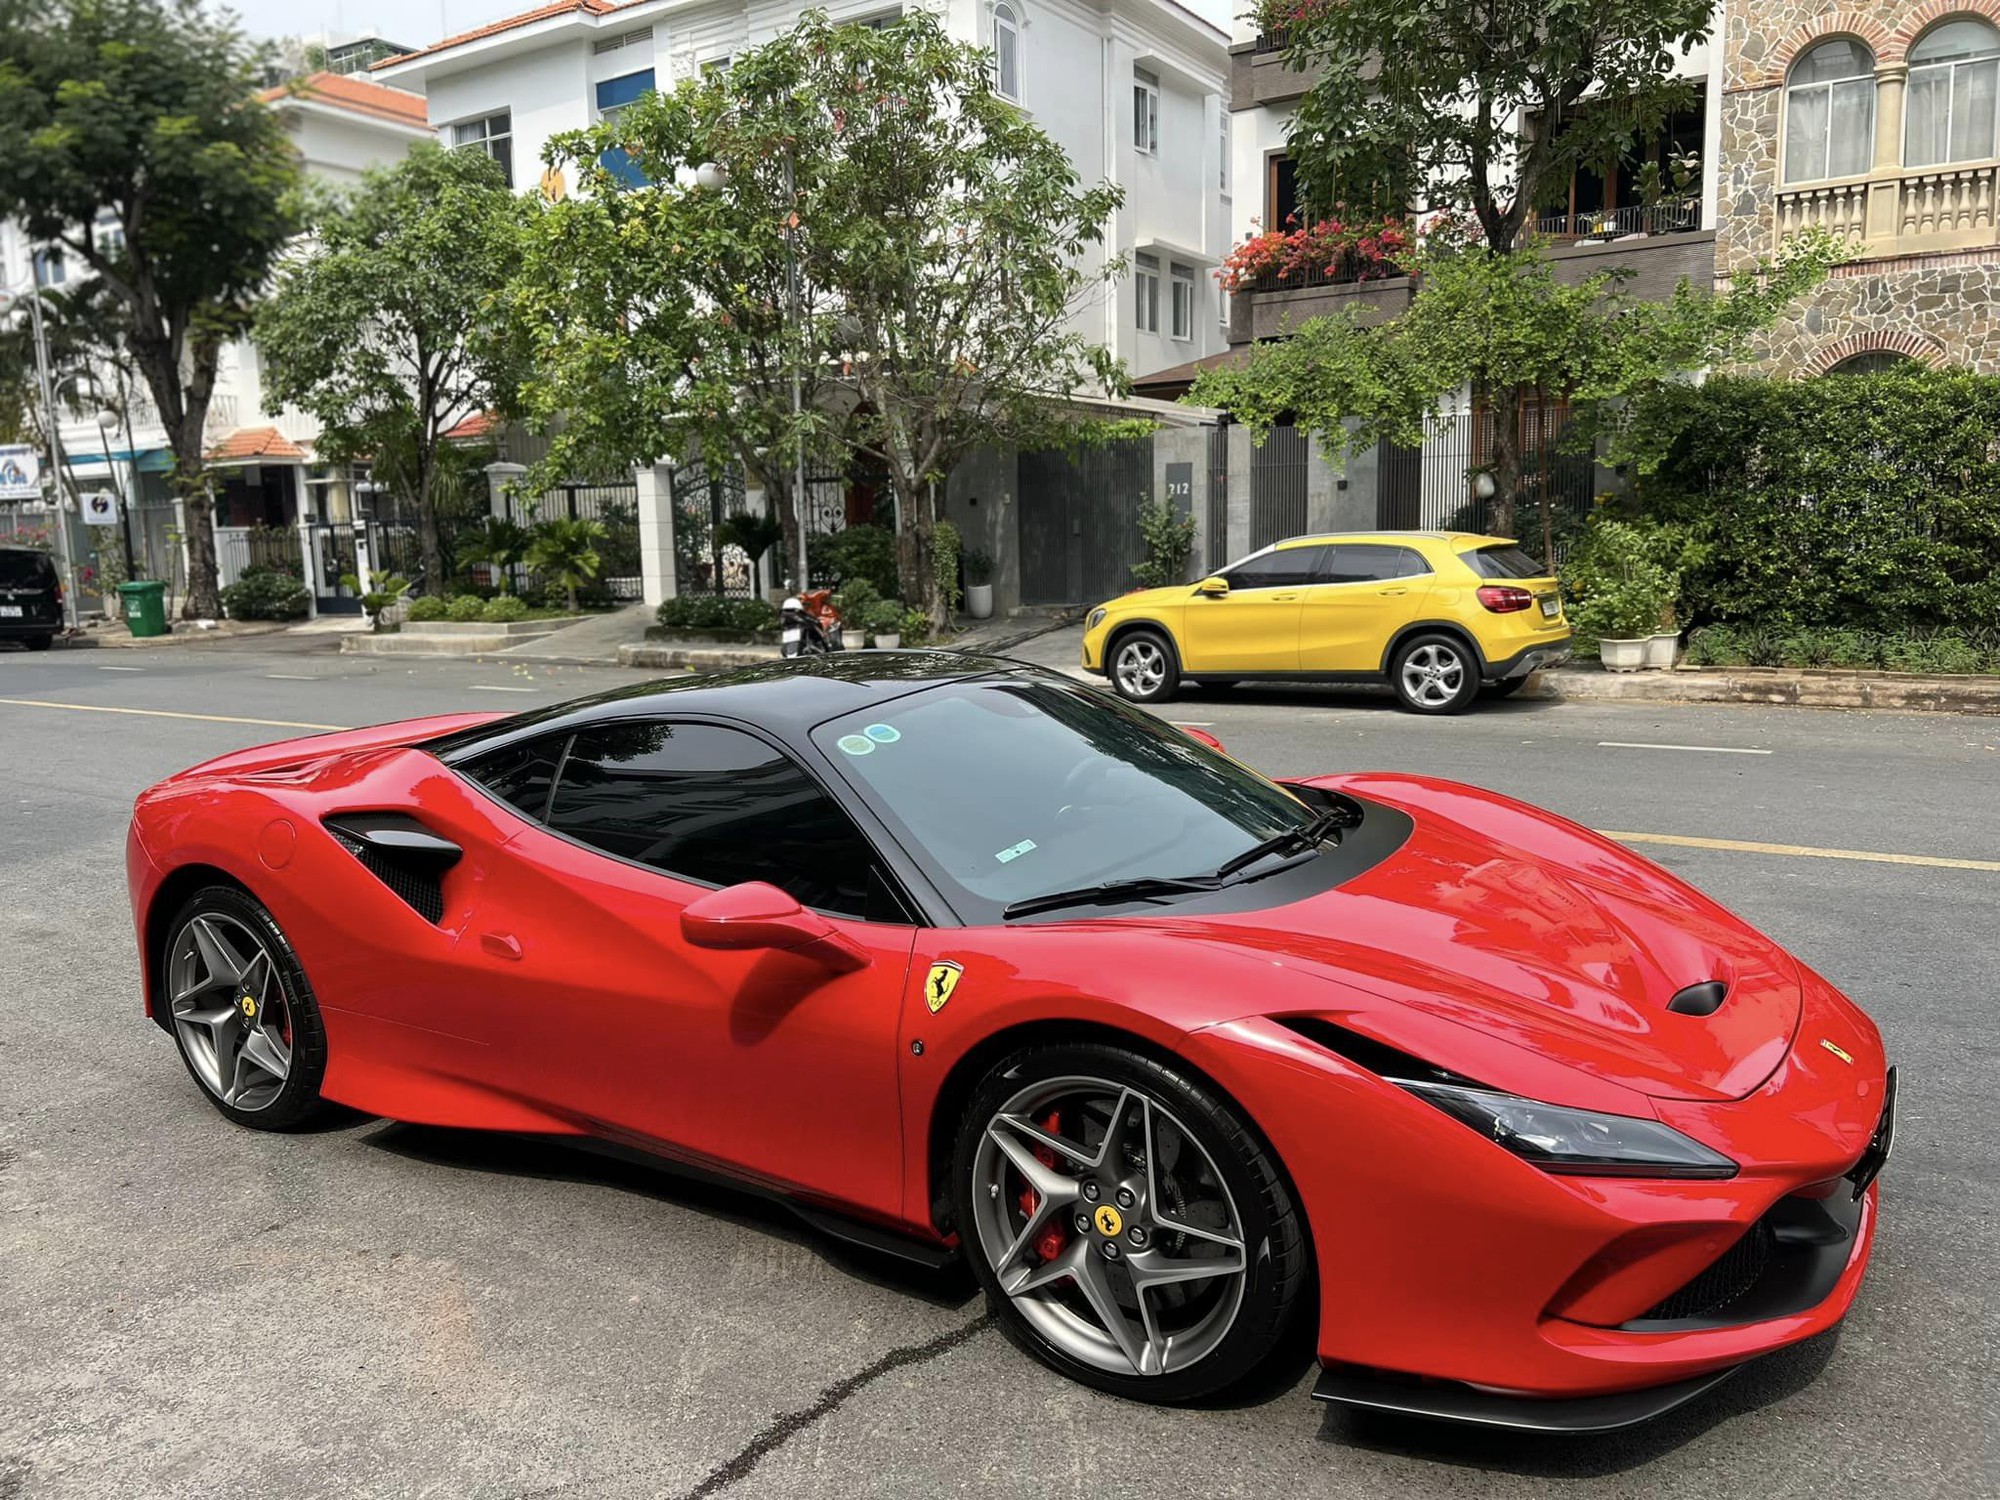 Cường Đô la hỏi mua Ferrari 12Cilindri sau vài giờ ra mắt, 'chốt deal' chỉ trong một nốt nhạc, dân mạng 'đoán già đoán non' chủ nhân thứ hai ở Việt Nam là một đại gia 'quen mặt' - Ảnh 12.